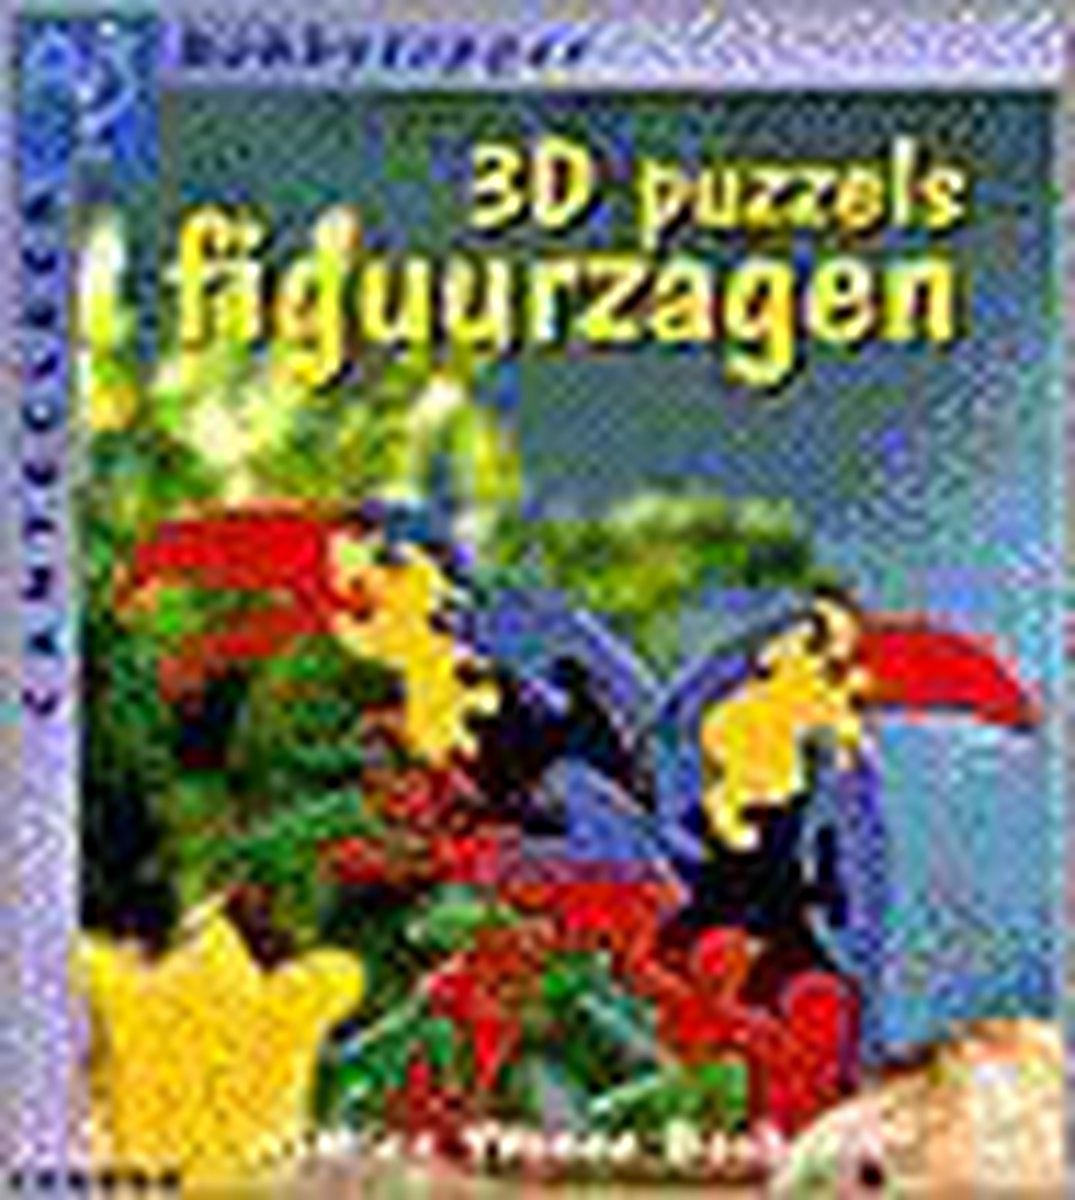 3D puzzels figuurzagen / Cantecleer hobbytopper